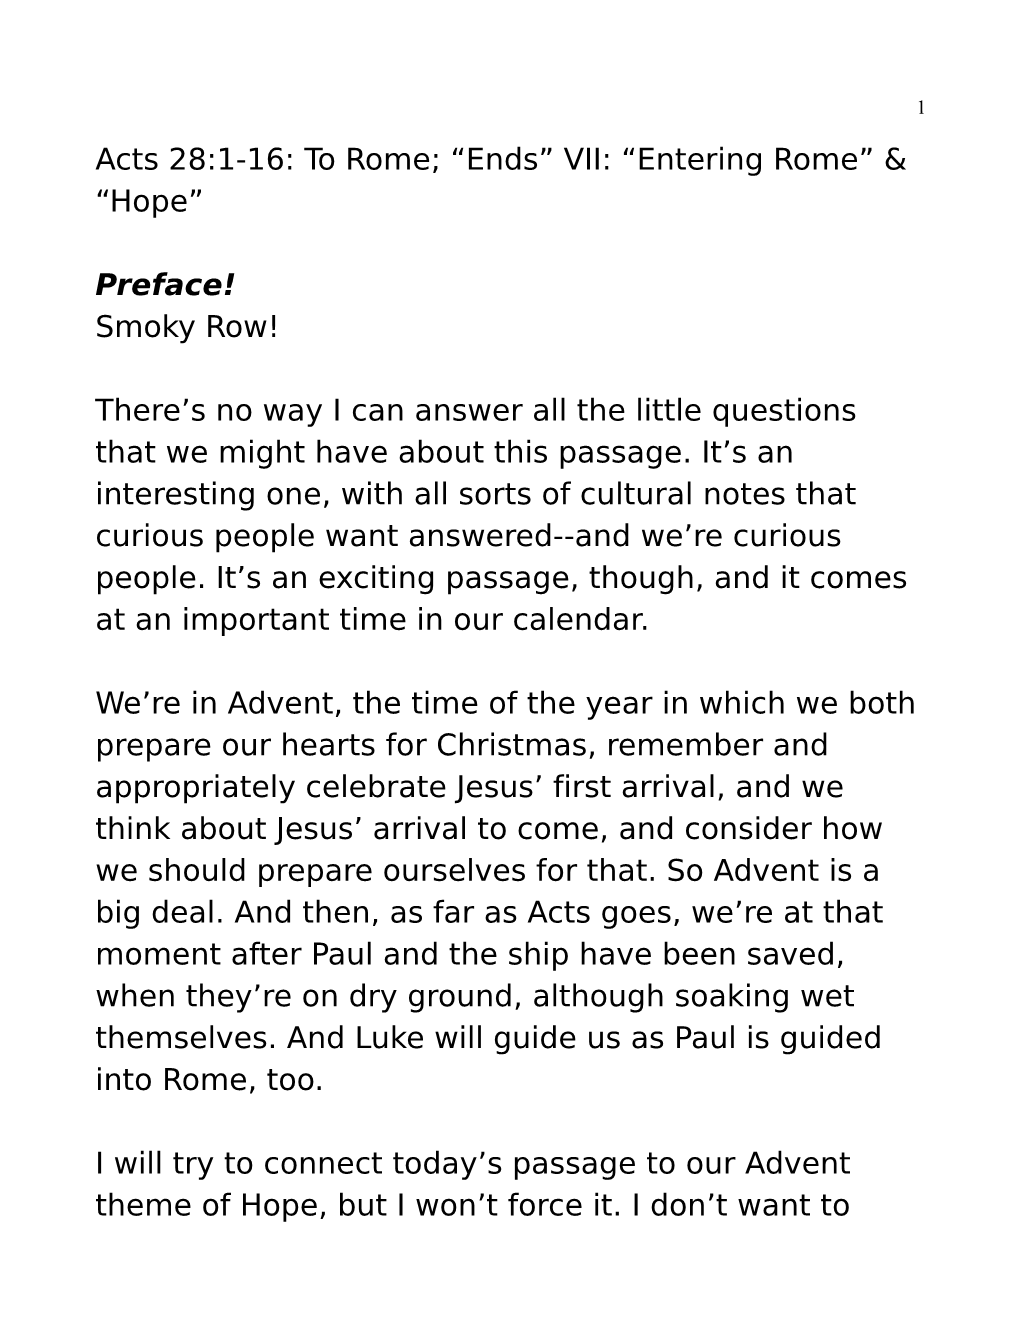 “Entering Rome” & “Hope” Preface! Smoky Row!